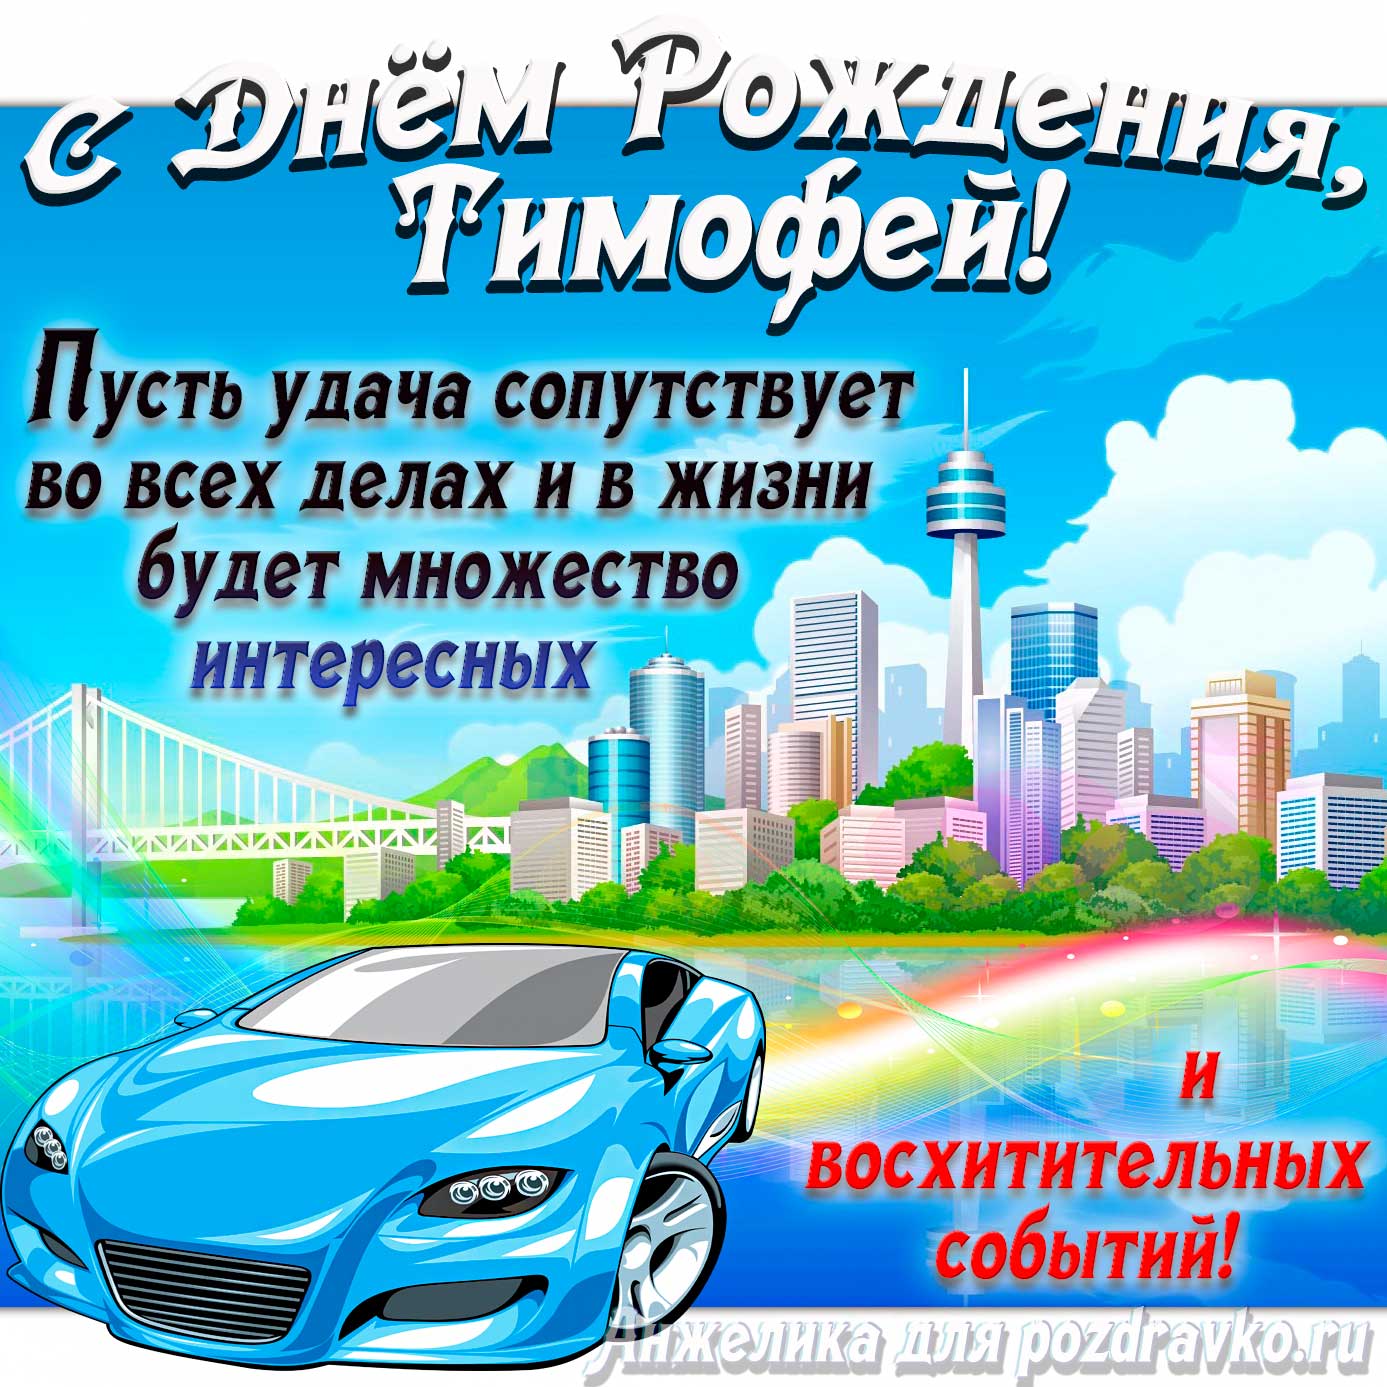 Открытка - с Днём Рождения Тимофей с голубой машиной и пожеланием. Скачать бесплатно или отправить картинку.